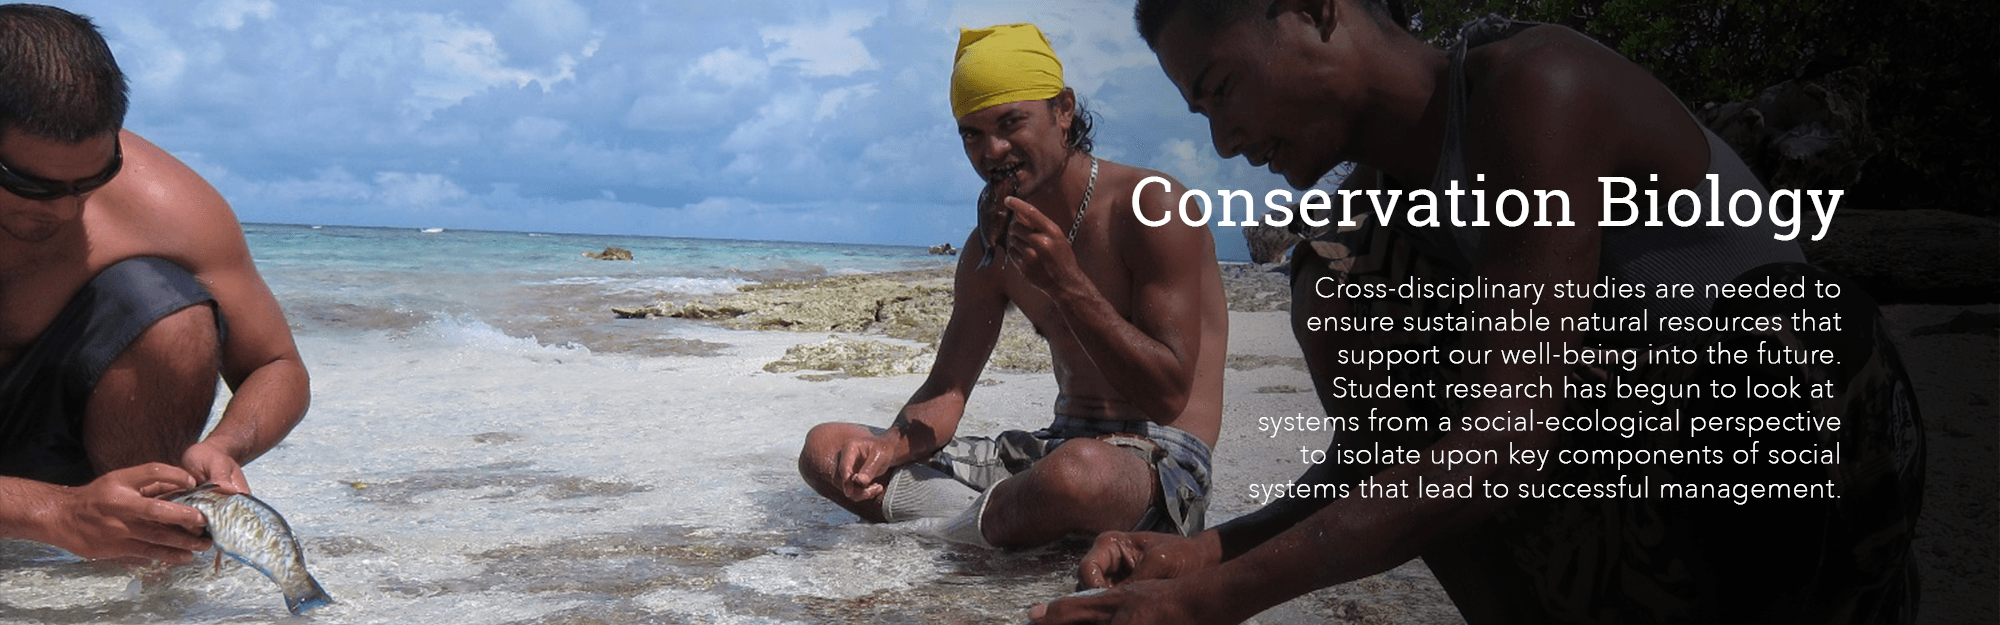 Conservation biology